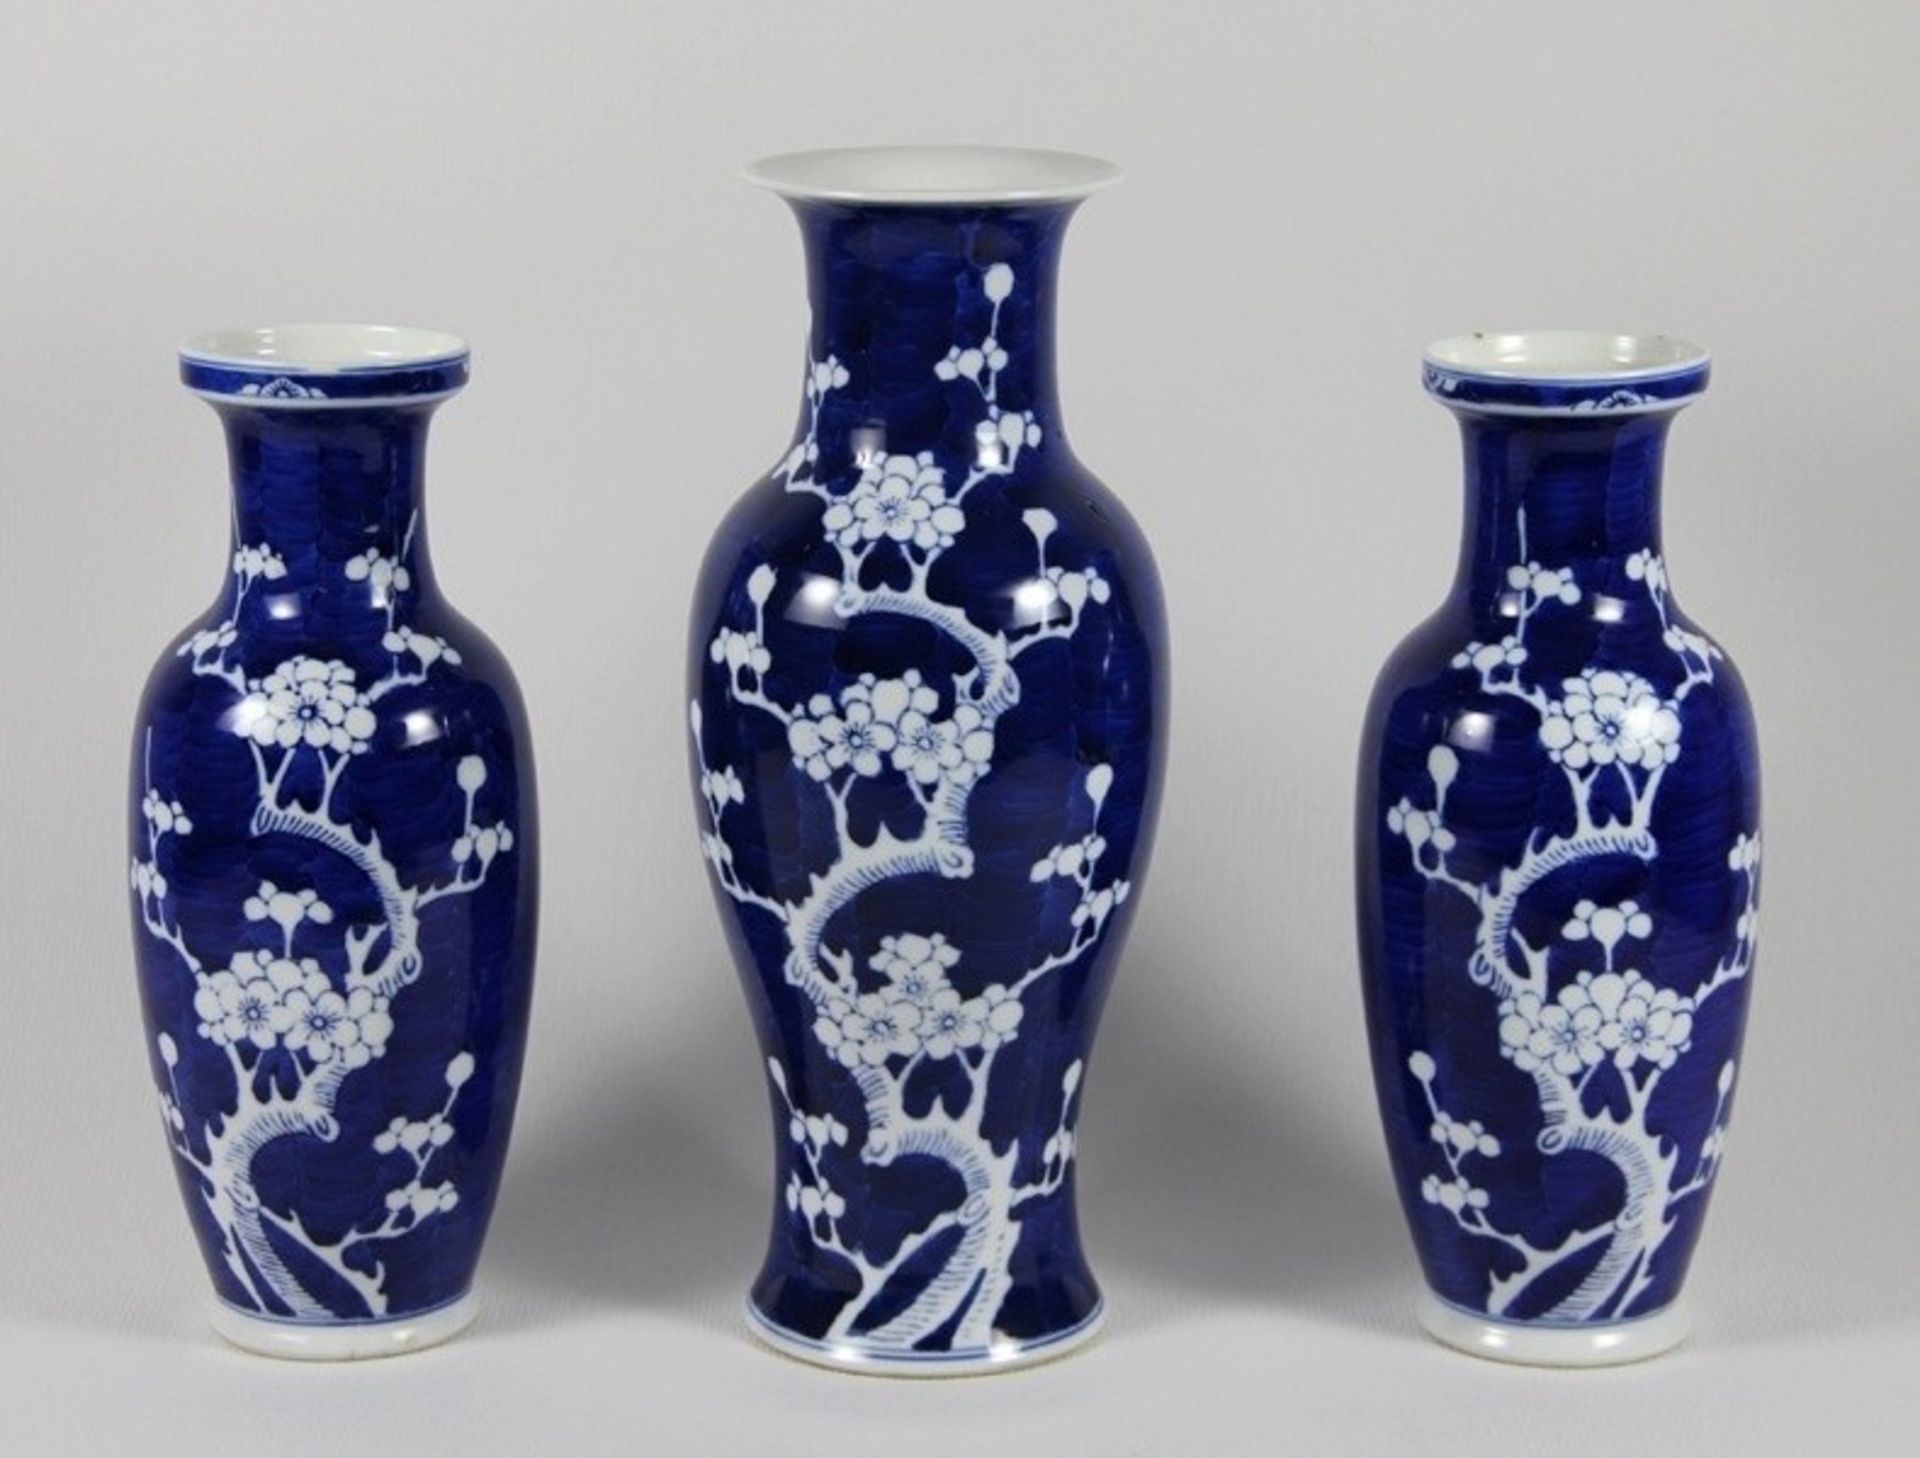 Satz Japan-Vasen19. Jhd., Japan, Satz aus 3 Porzellanvasen, in 2 Größen u. Formen, elegantes